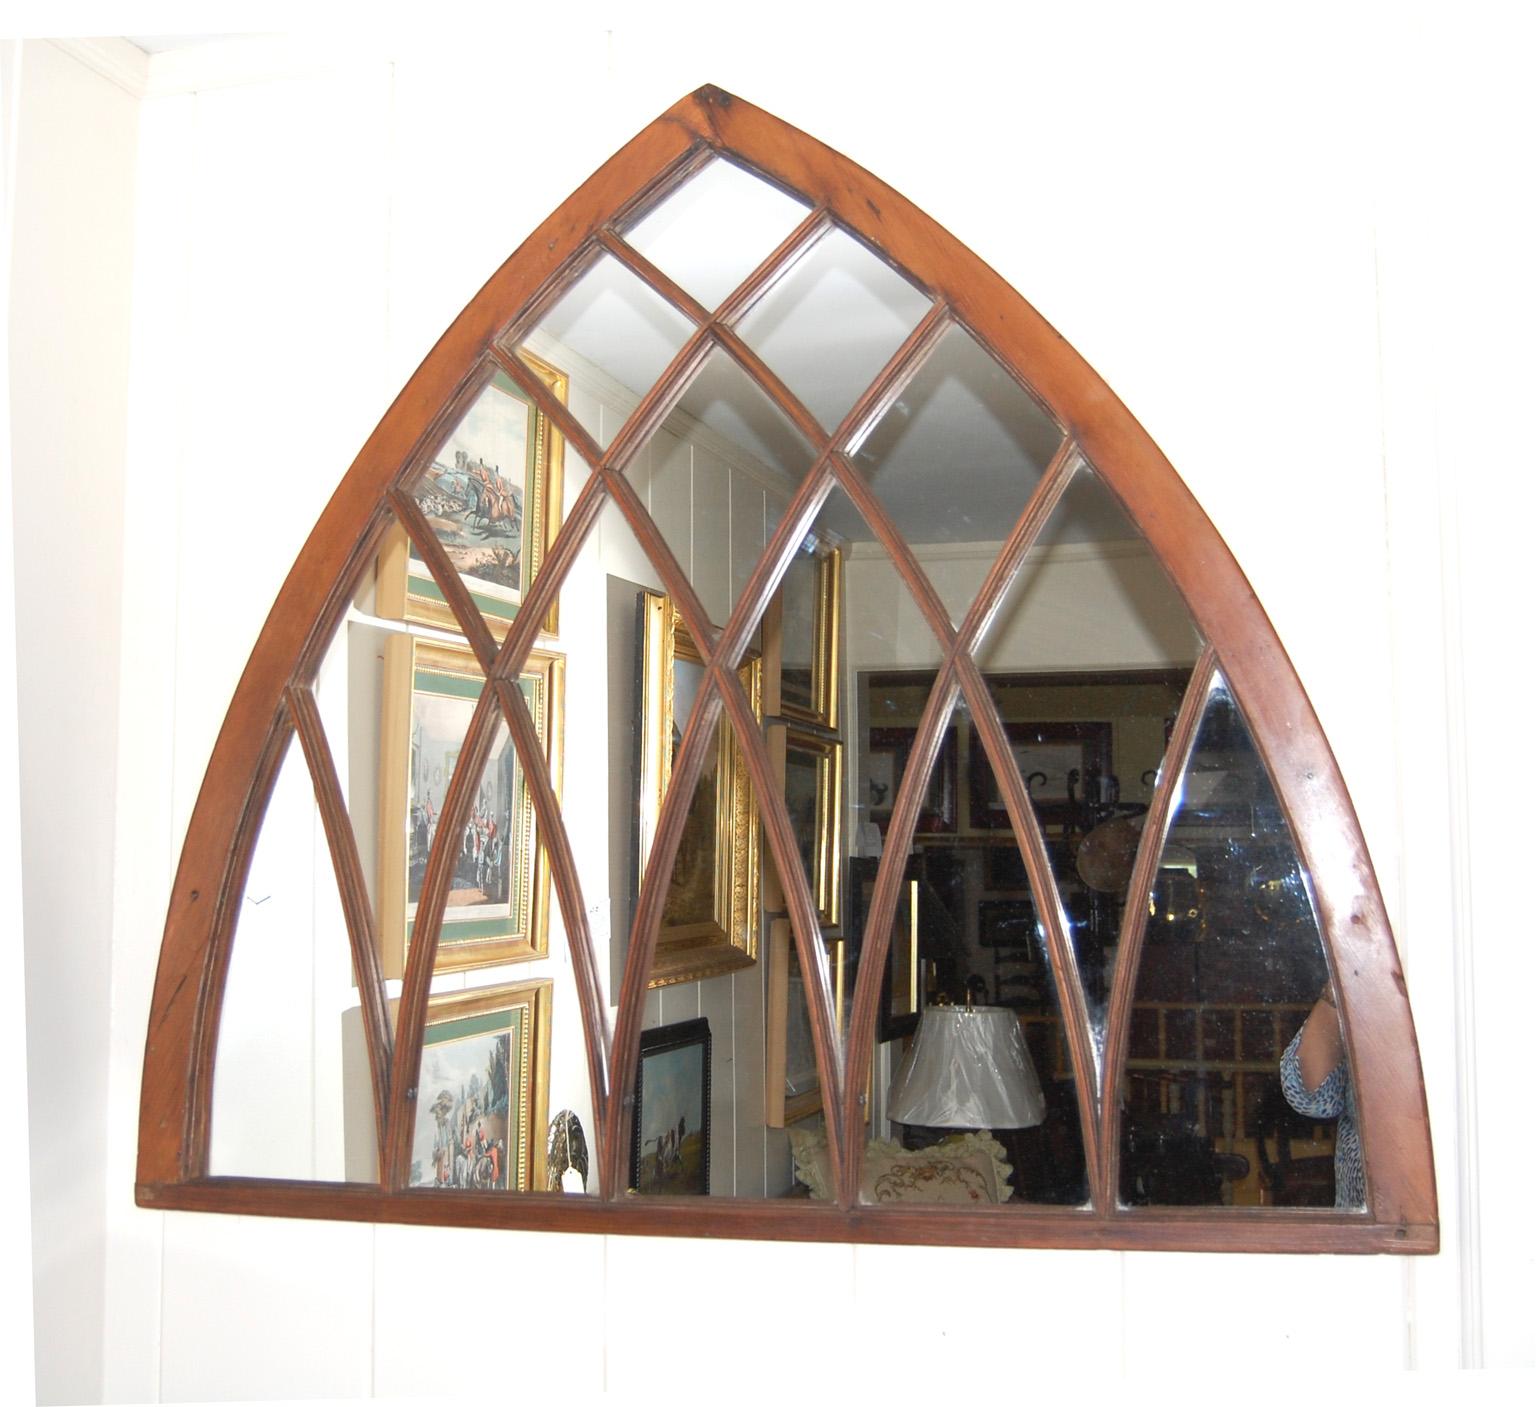 
 Großer neugotischer Fensterspiegel aus amerikanischem Kiefernholz des 19. Jahrhunderts mit geformten, ineinander greifenden Sprossen.  Bei diesem formschönen Fenster wurde das Fensterglas durch einen Spiegel ersetzt und die Farbe entfernt. Das